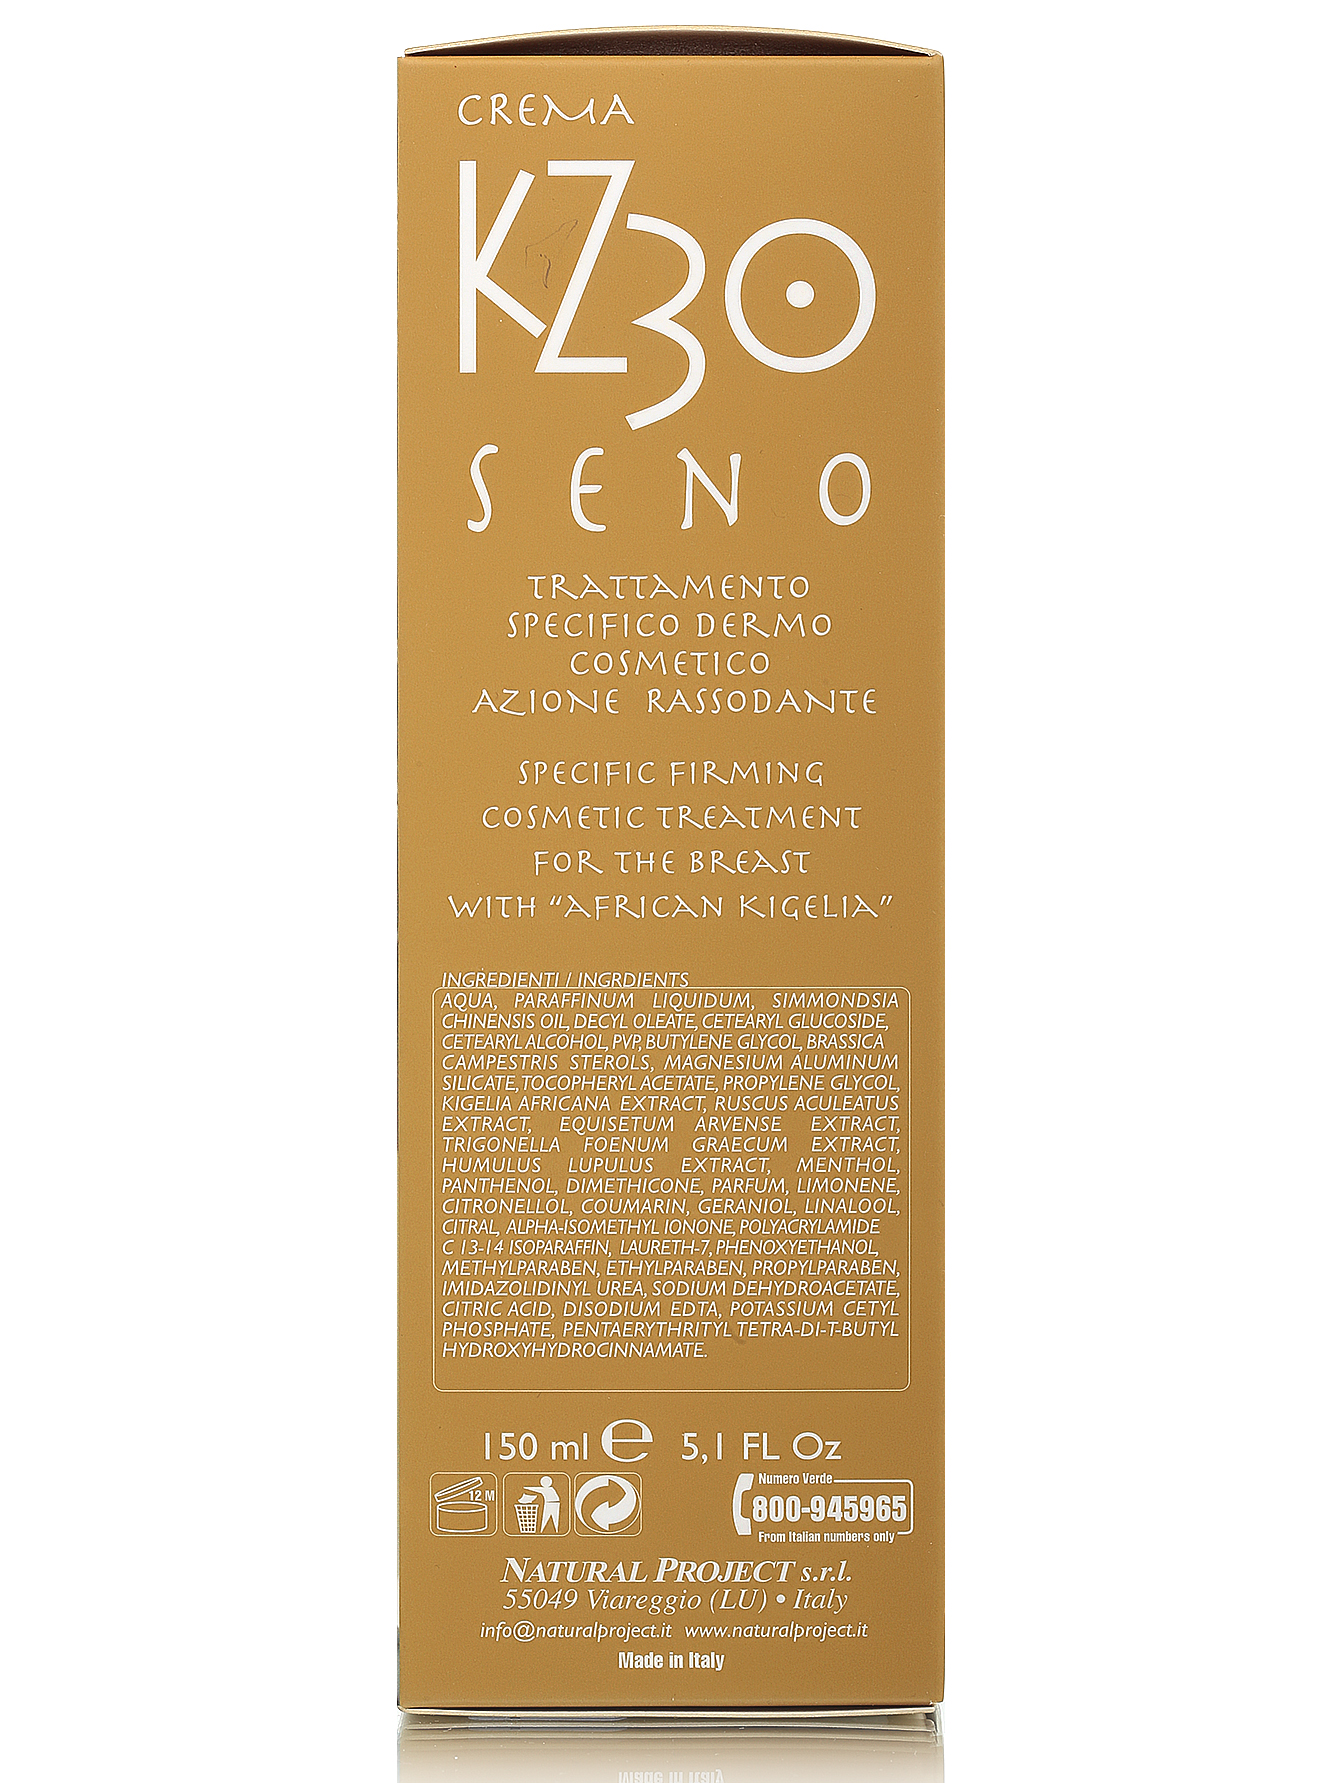  Крем для шеи и декольте "Kz 30 seno crema" - Body Care, 150ml - Модель Верх-Низ